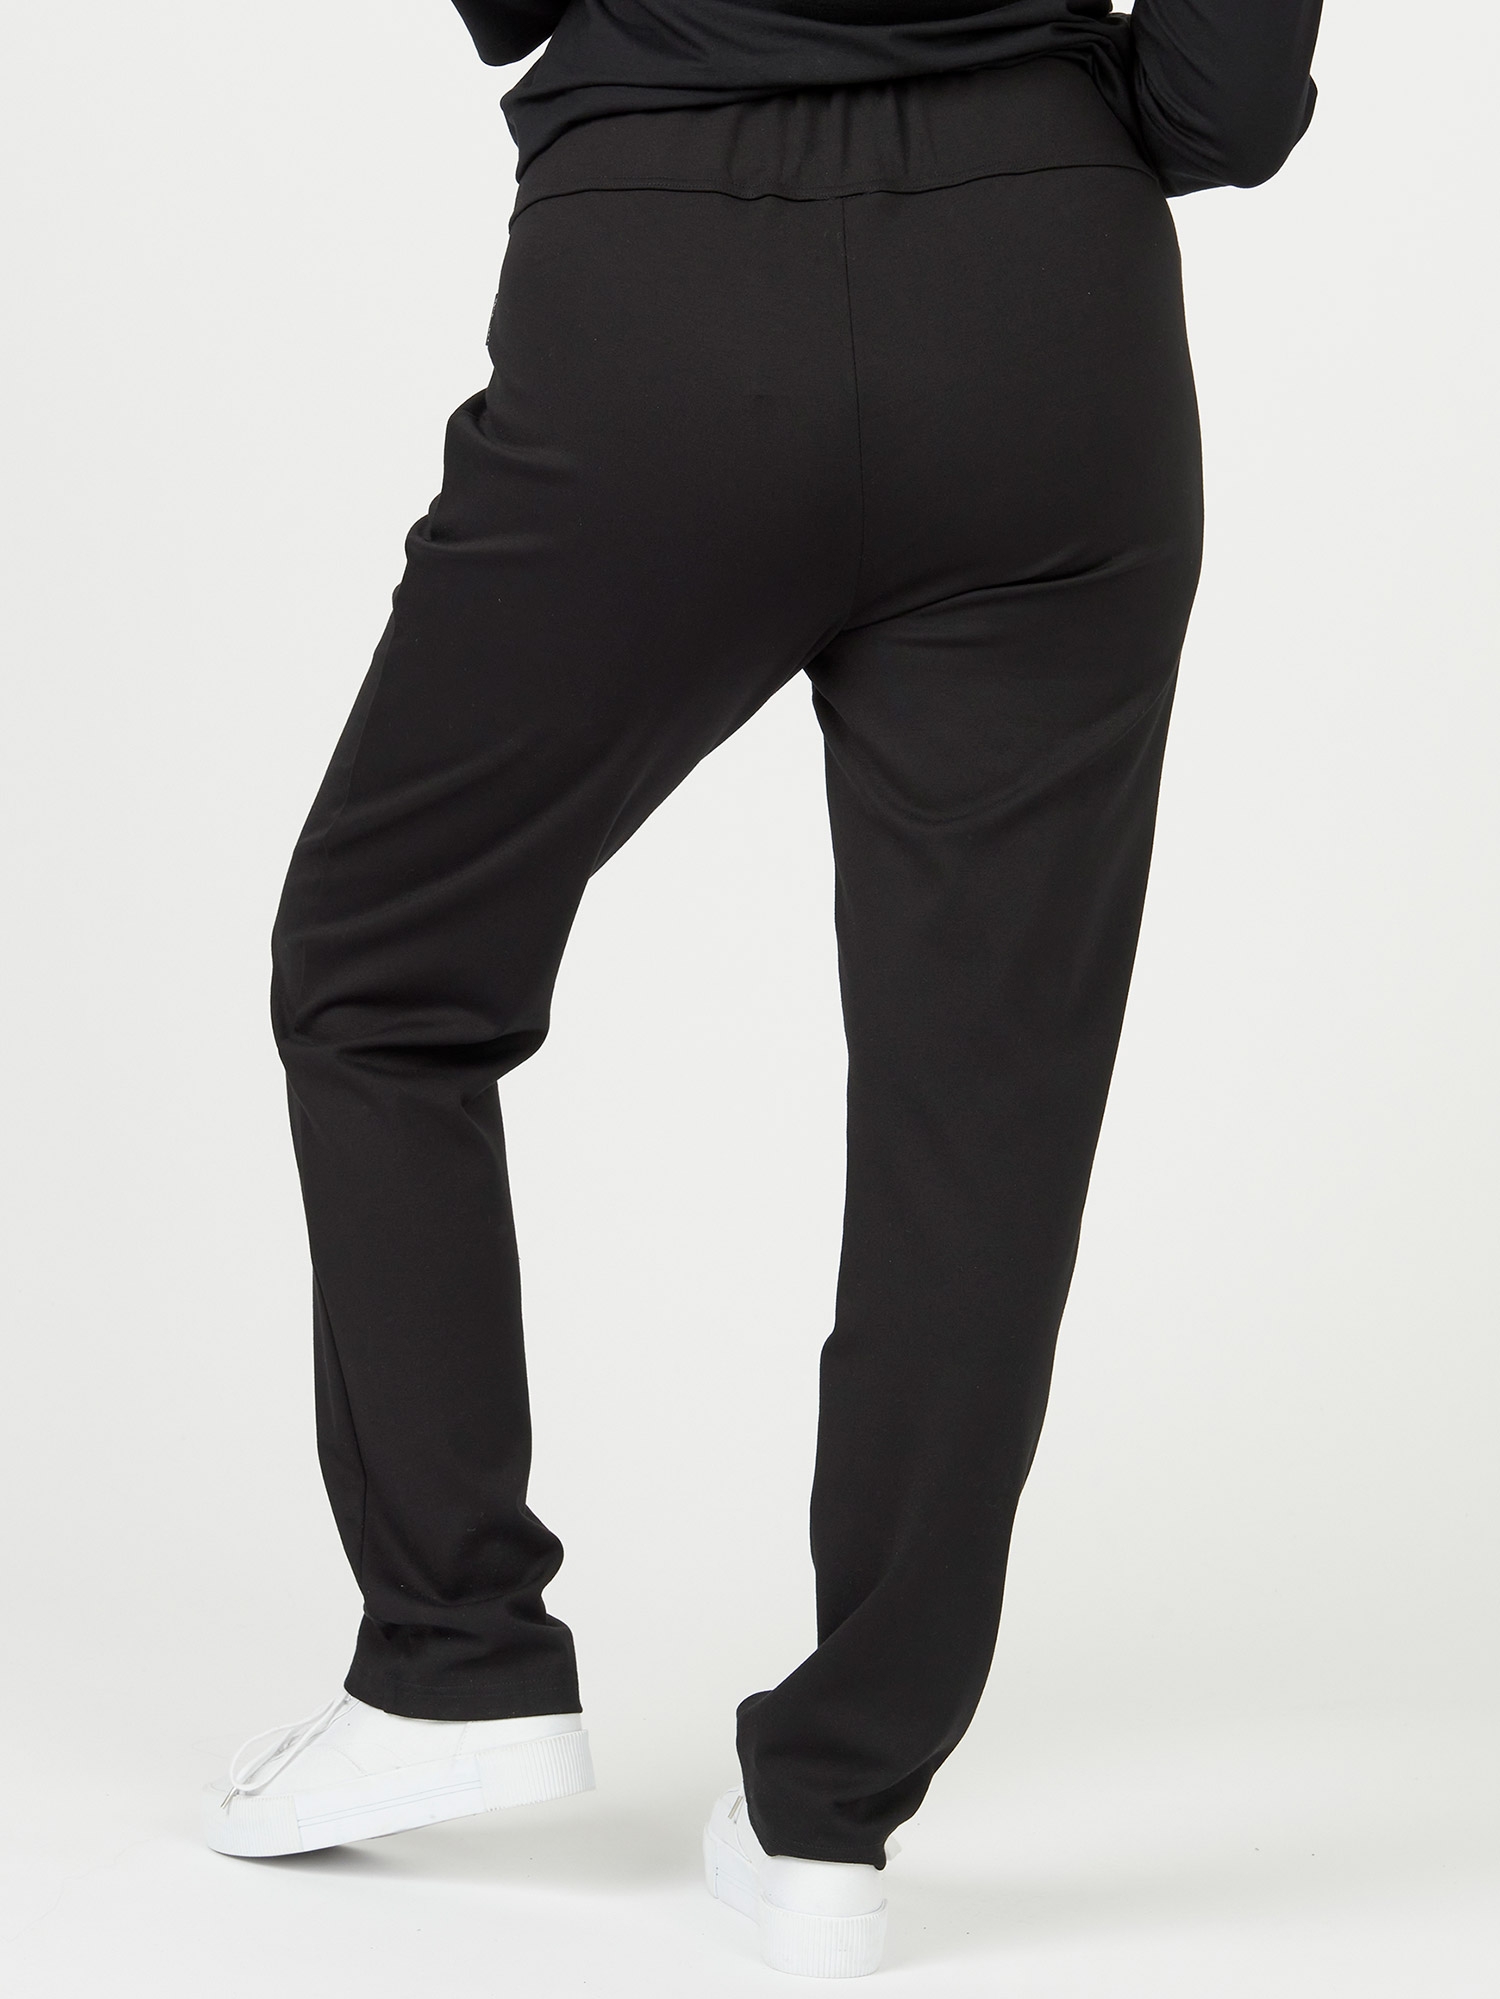 Liv bukser i sort med bred linning fra Pont Neuf